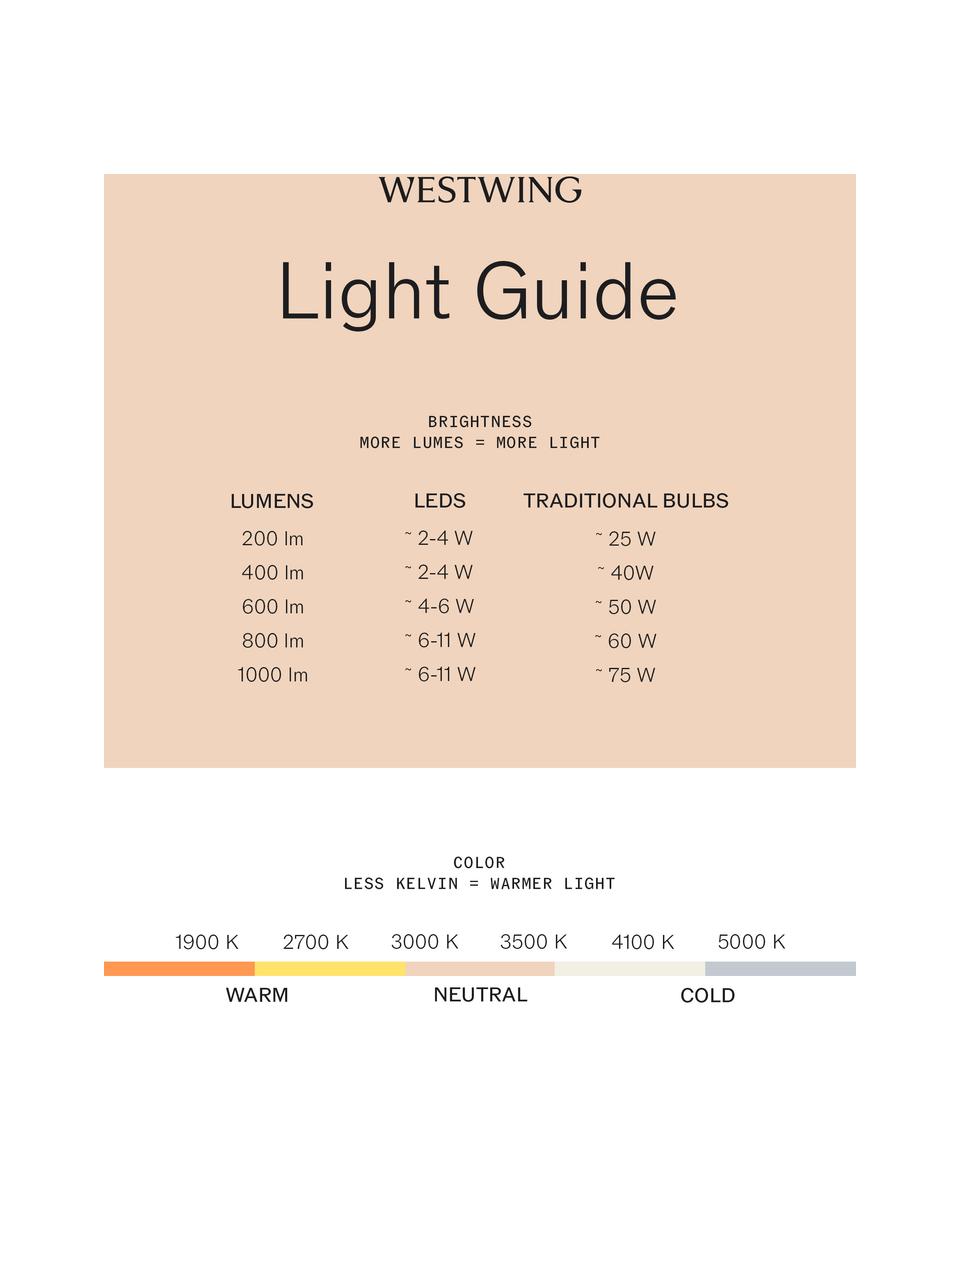 Solar LED-Wegeleuchte Gretita mit Dämmerungssensor, Recyceltes Plastikreststoff, Weiß, Ø 9 x H 39 cm